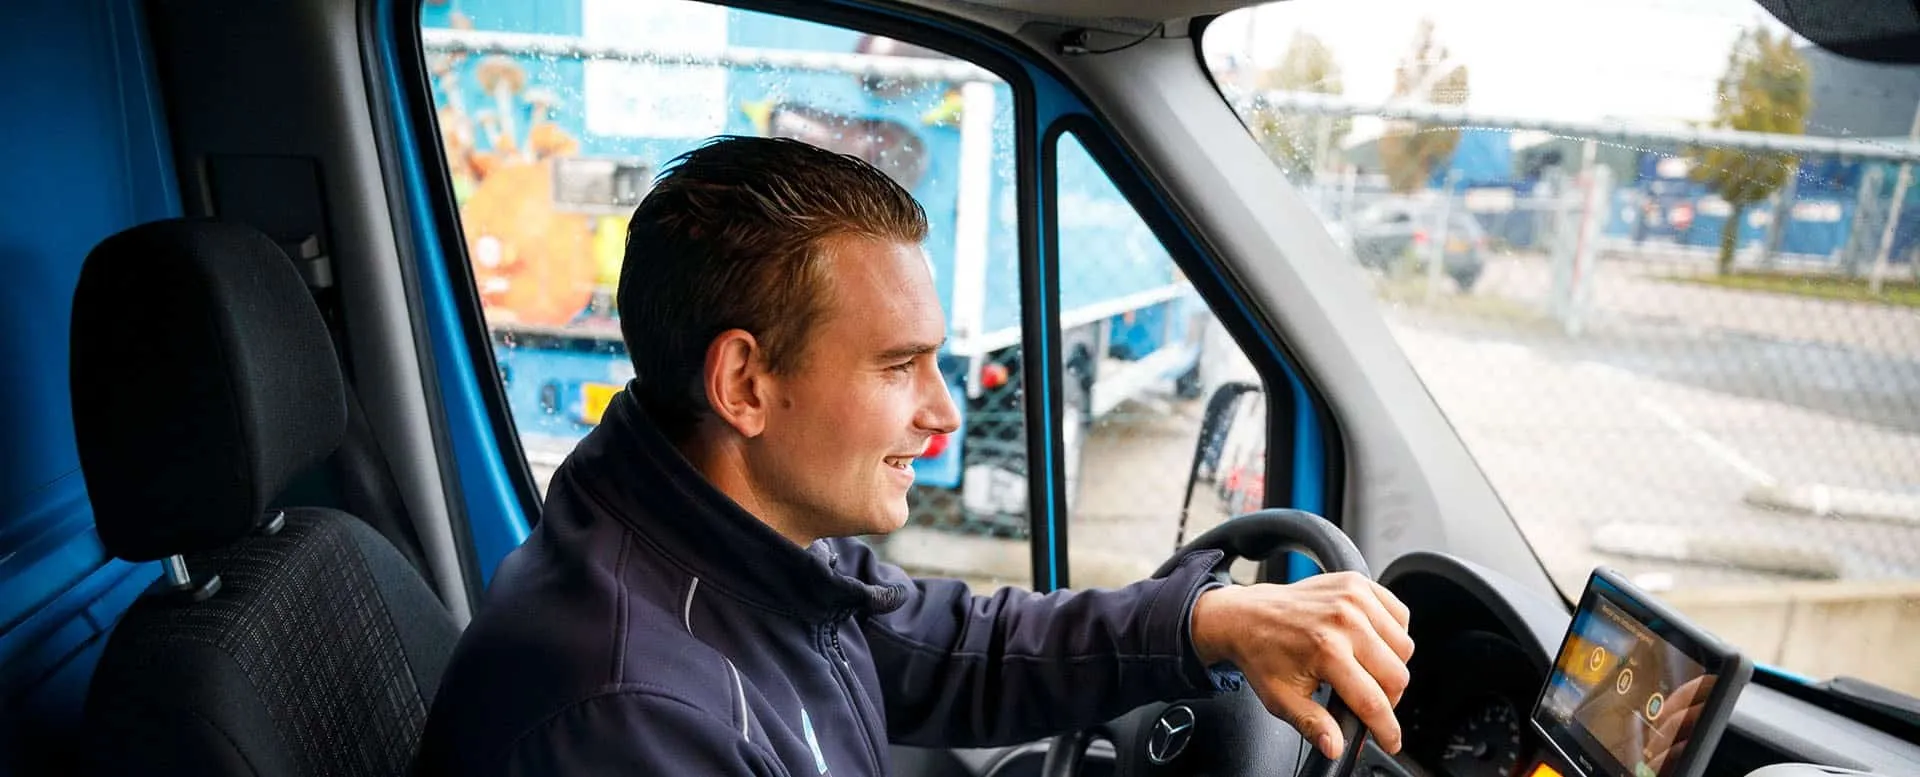 Albert Heijn online chauffeur Kees achter het stuur